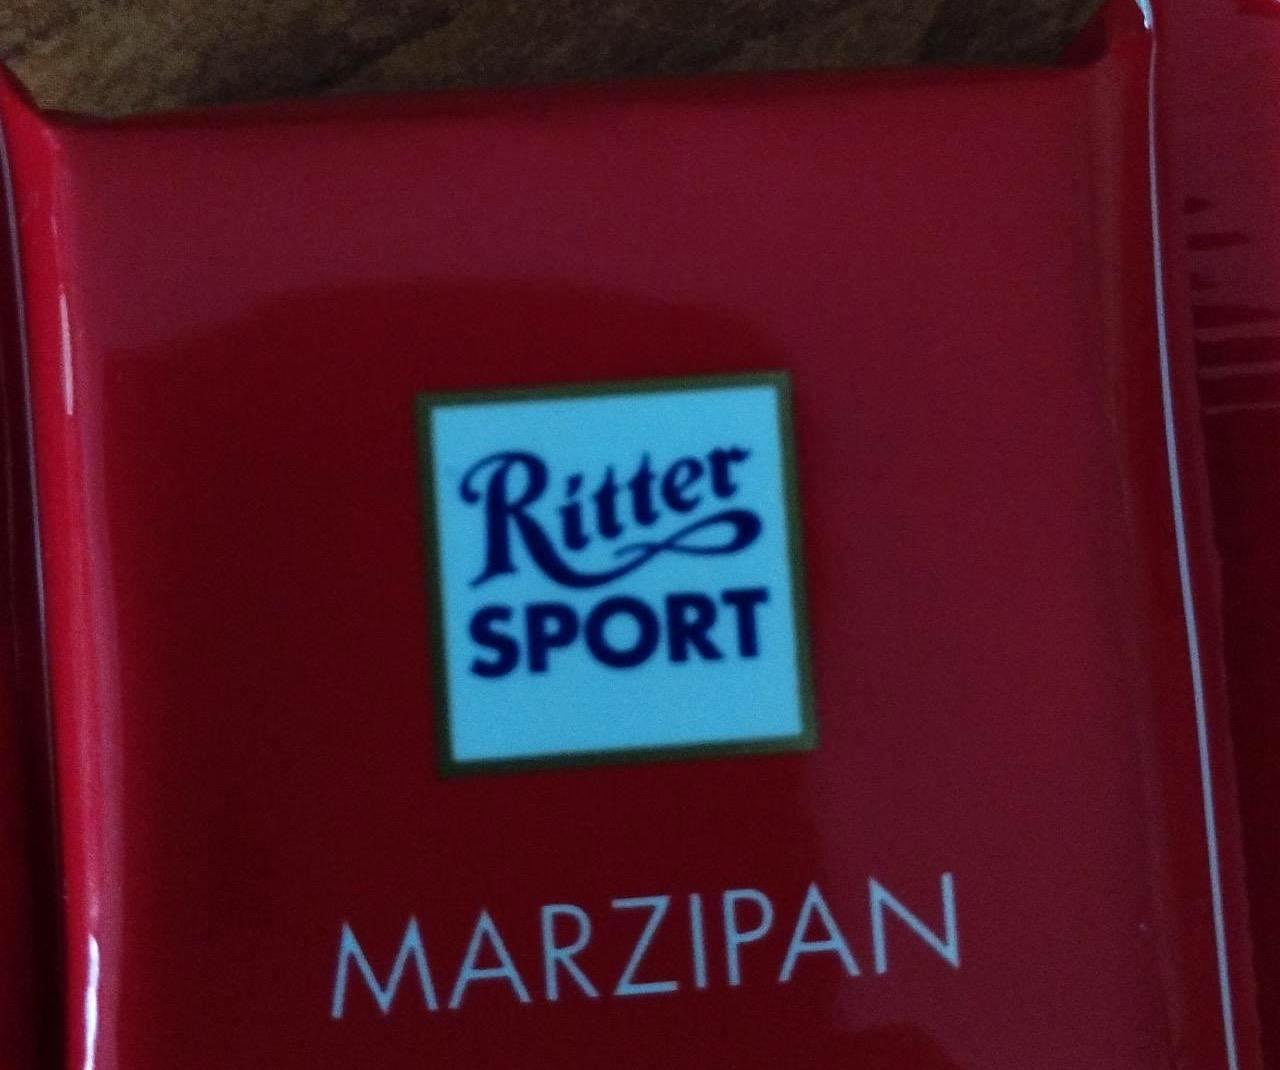 Képek - Ritter sport marzipan